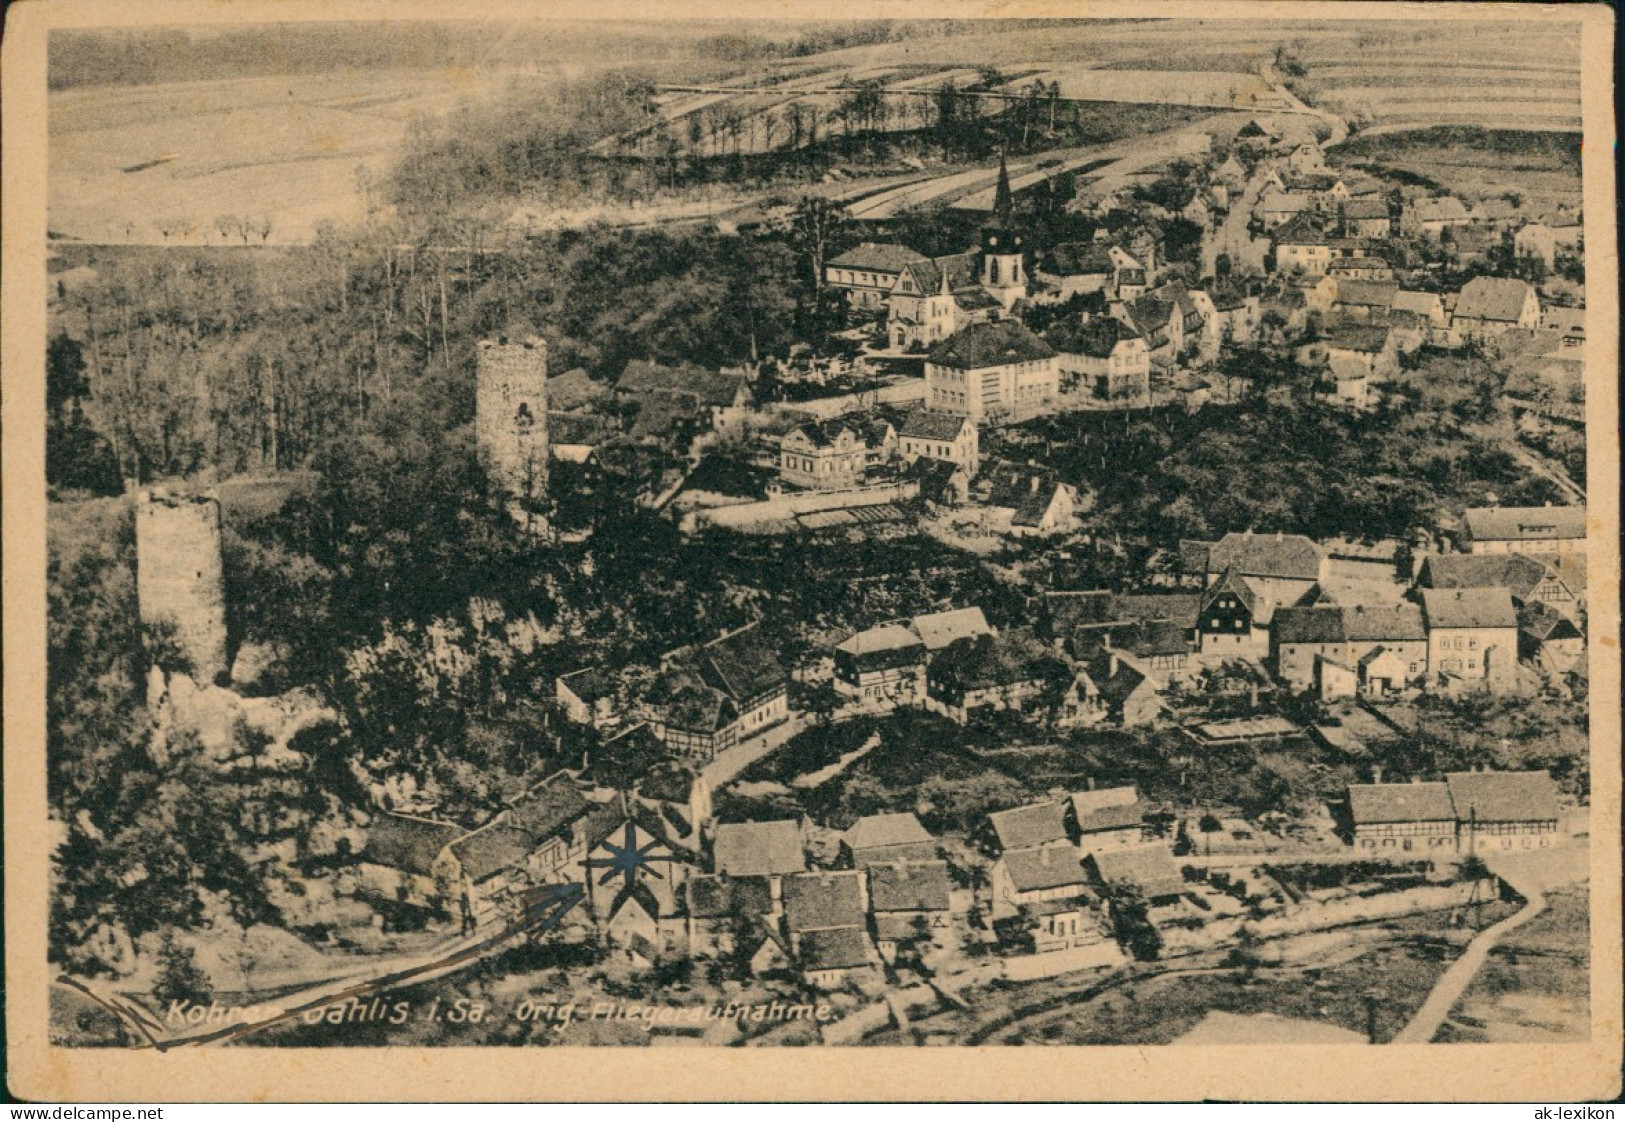 Gnandstein-Kohren-Sahlis Luftbild Kohren-Sahlis Original Fliederaufnahme 1940 - Kohren-Sahlis